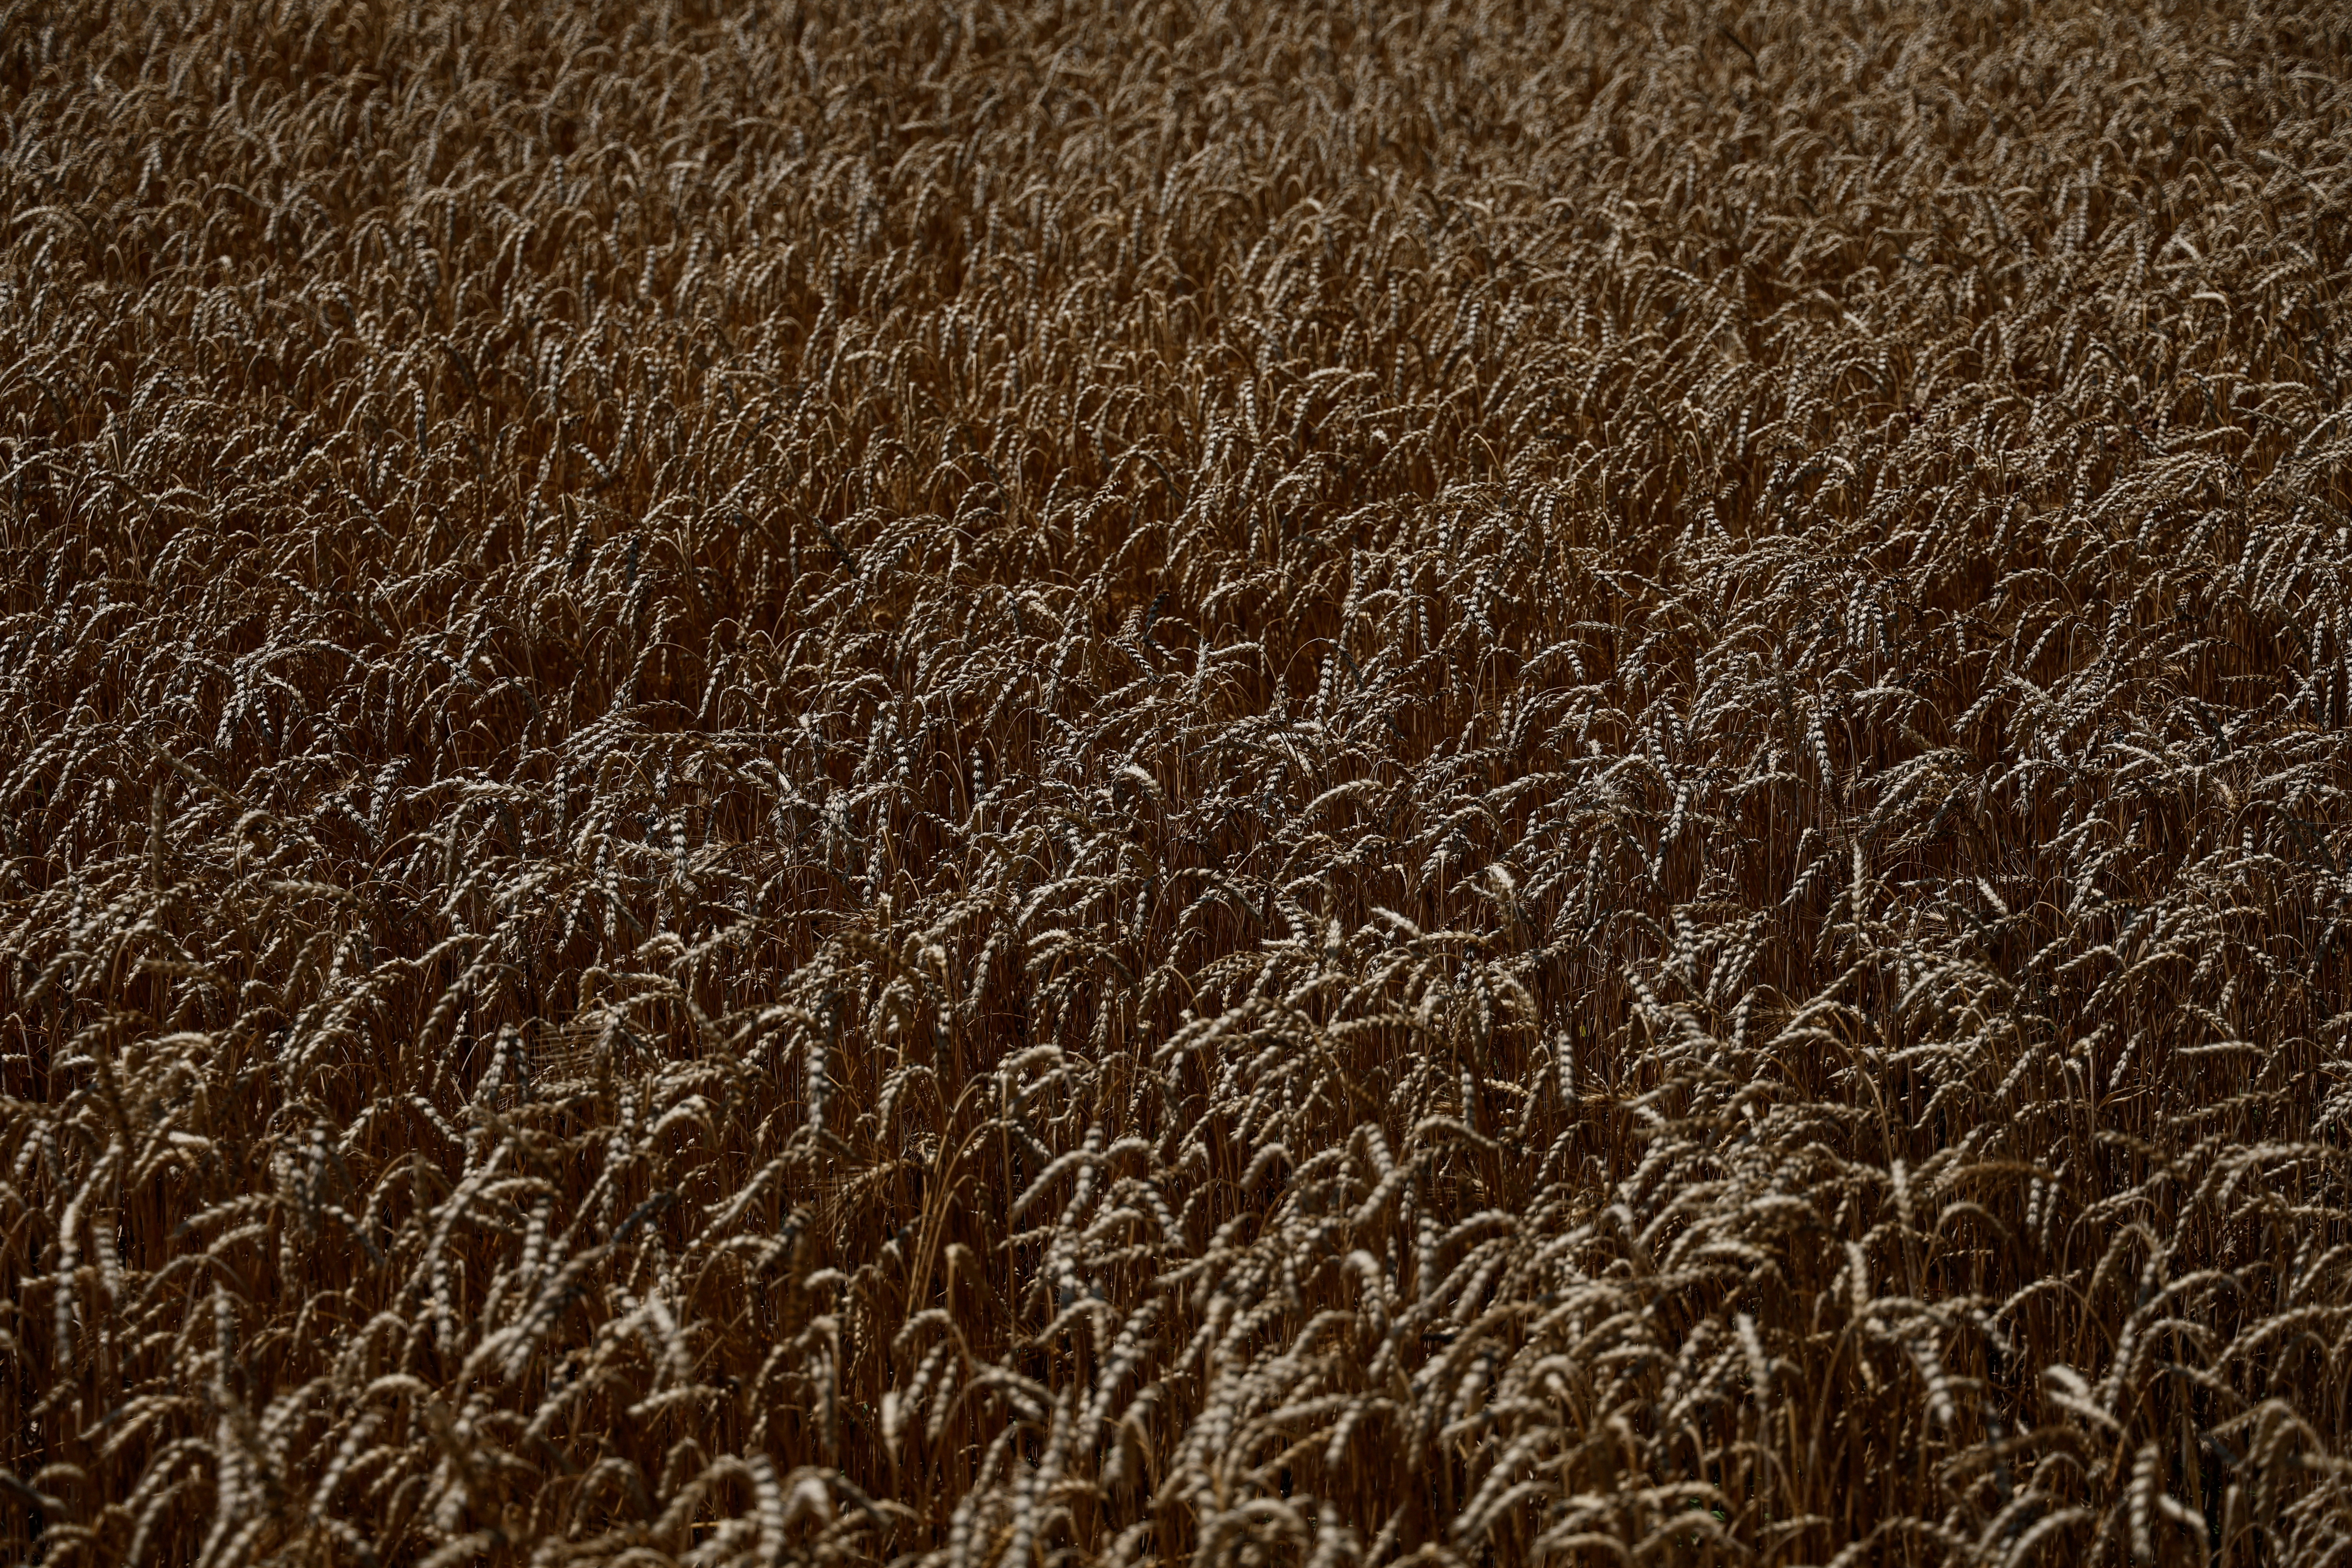 Wheat field is seen in the village of Zhurivka